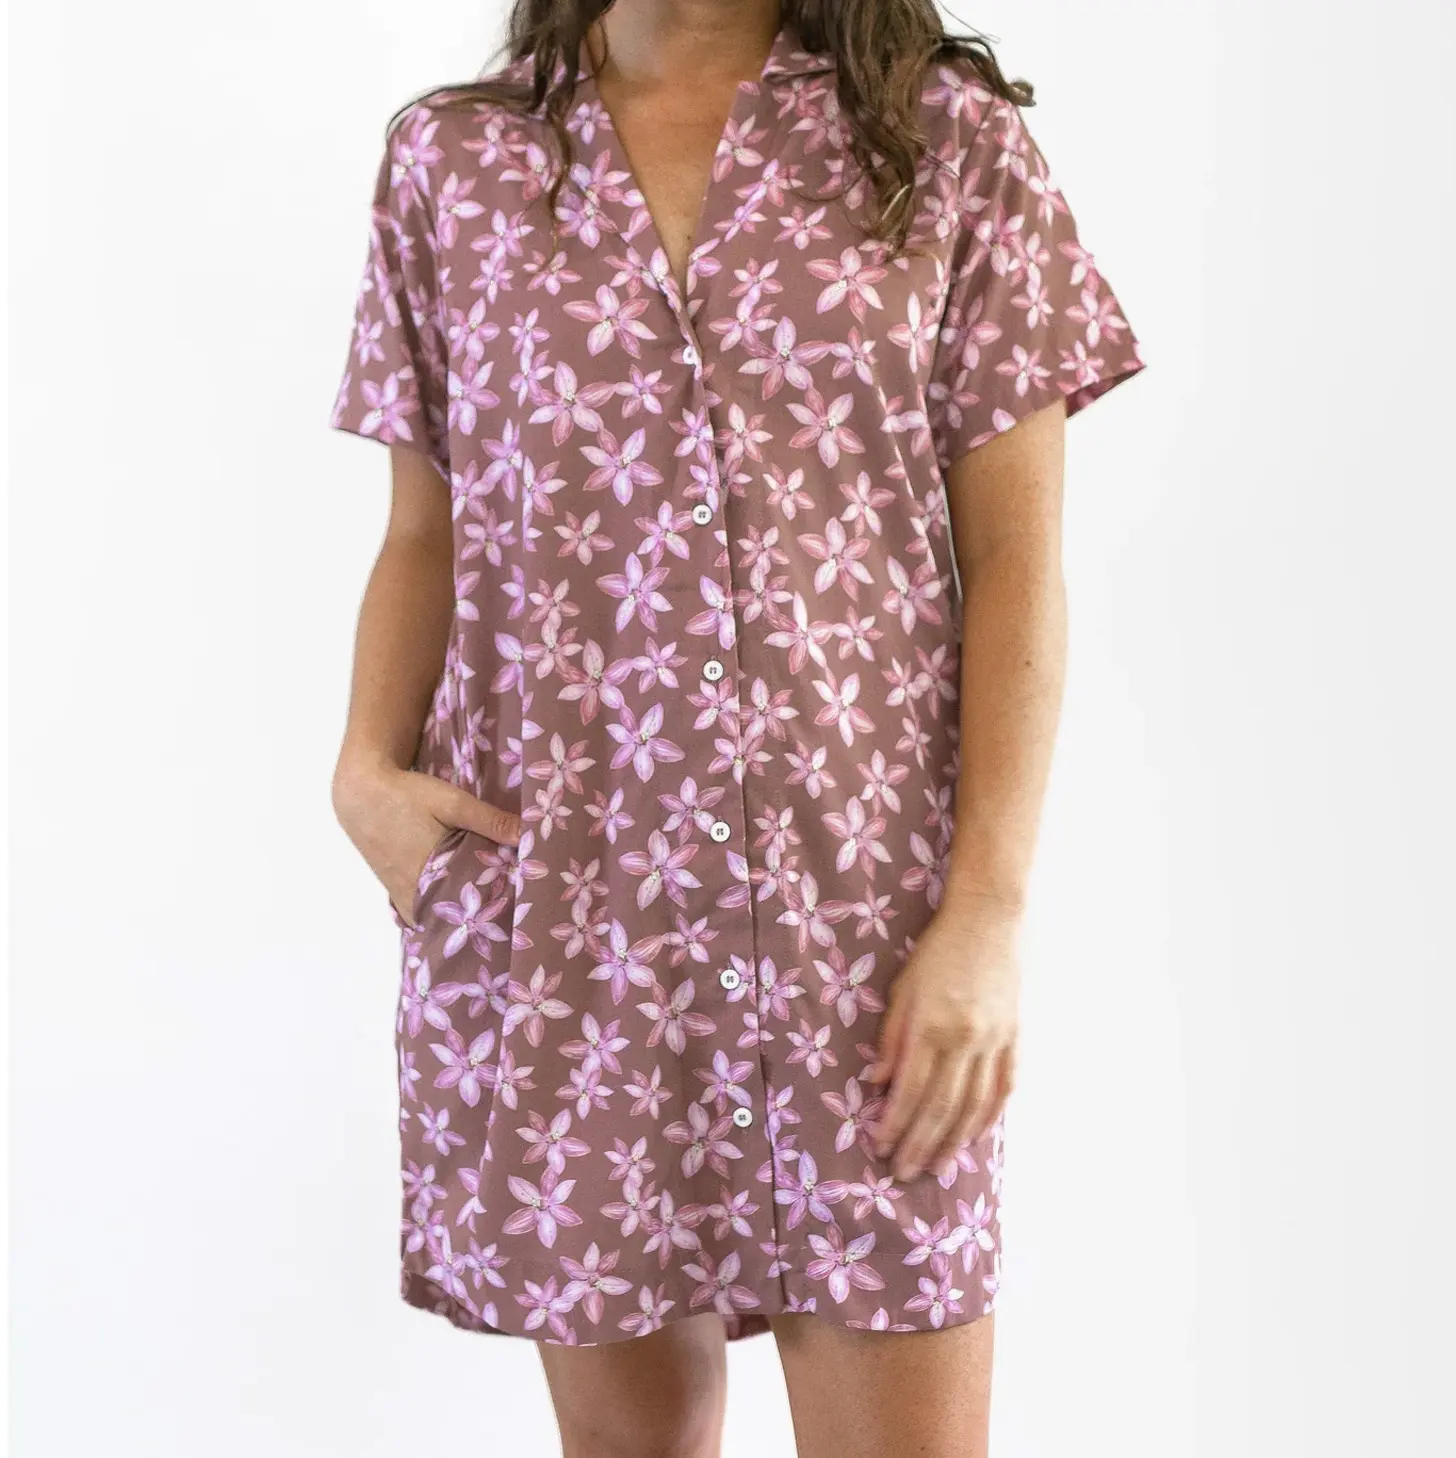 Baju kemeja wanita Rayon terlaris USA Gaun baju kancing atas gambar cetak desain anda sesuai pesanan